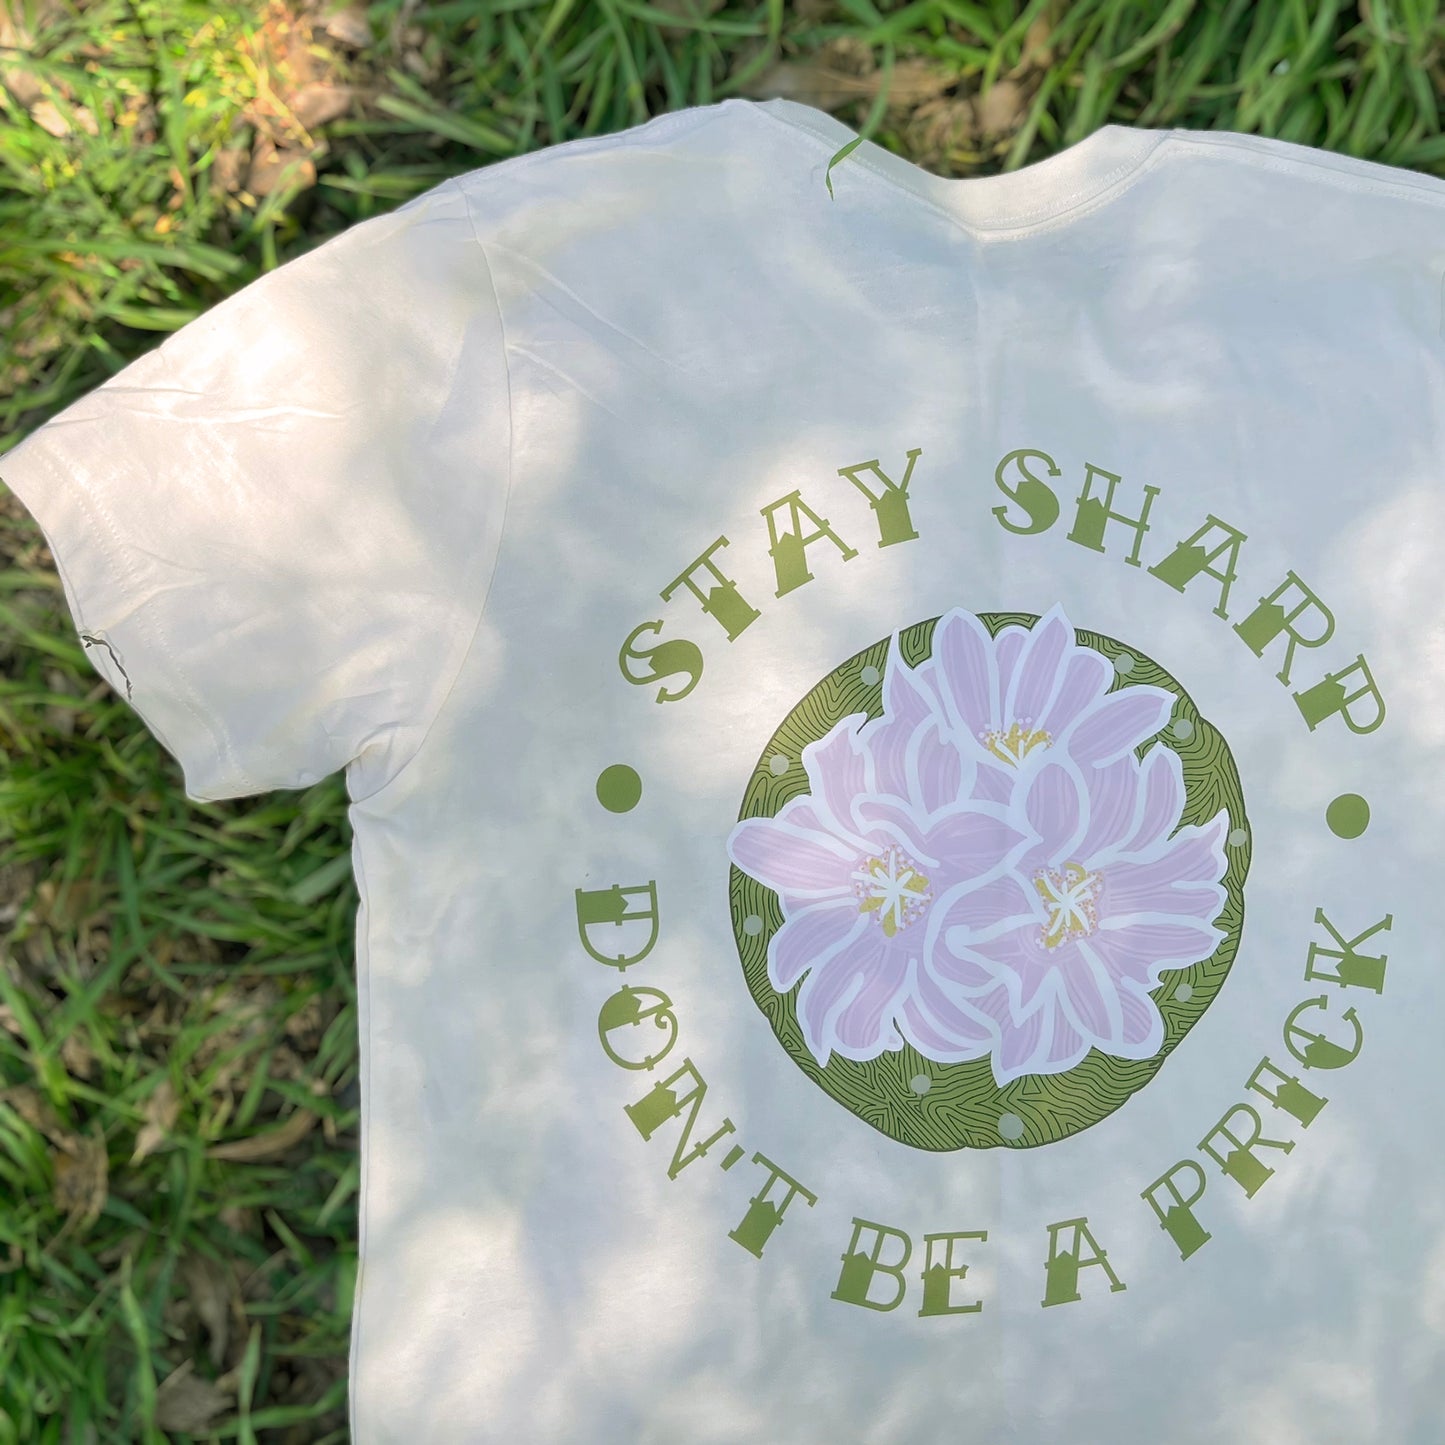 stay sharp cactus t-shirt